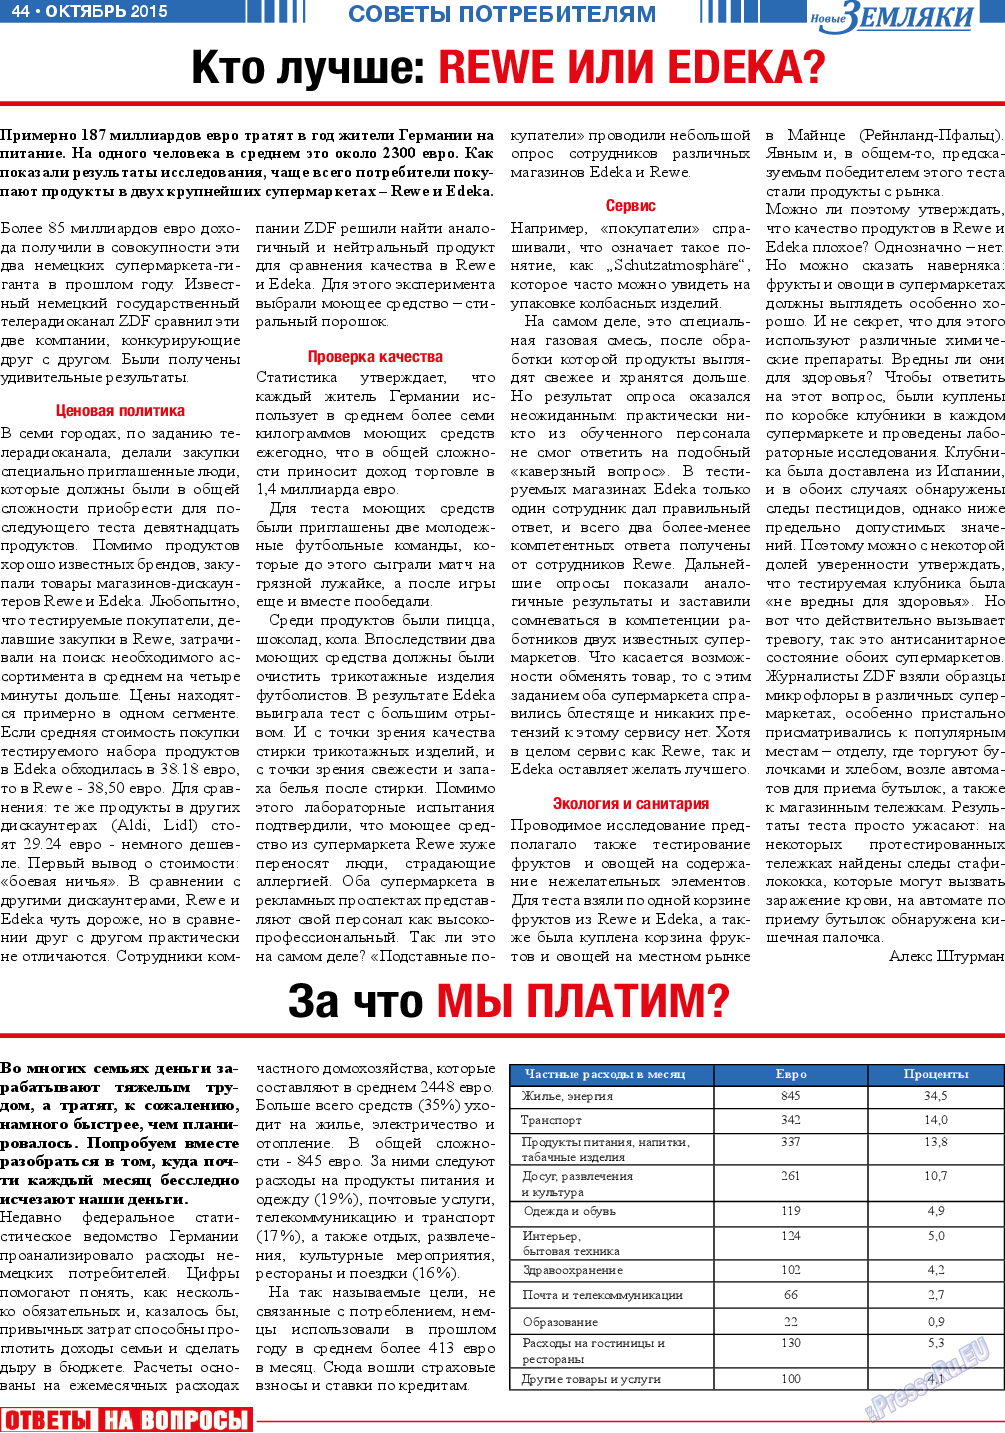 Новые Земляки, газета. 2015 №10 стр.44